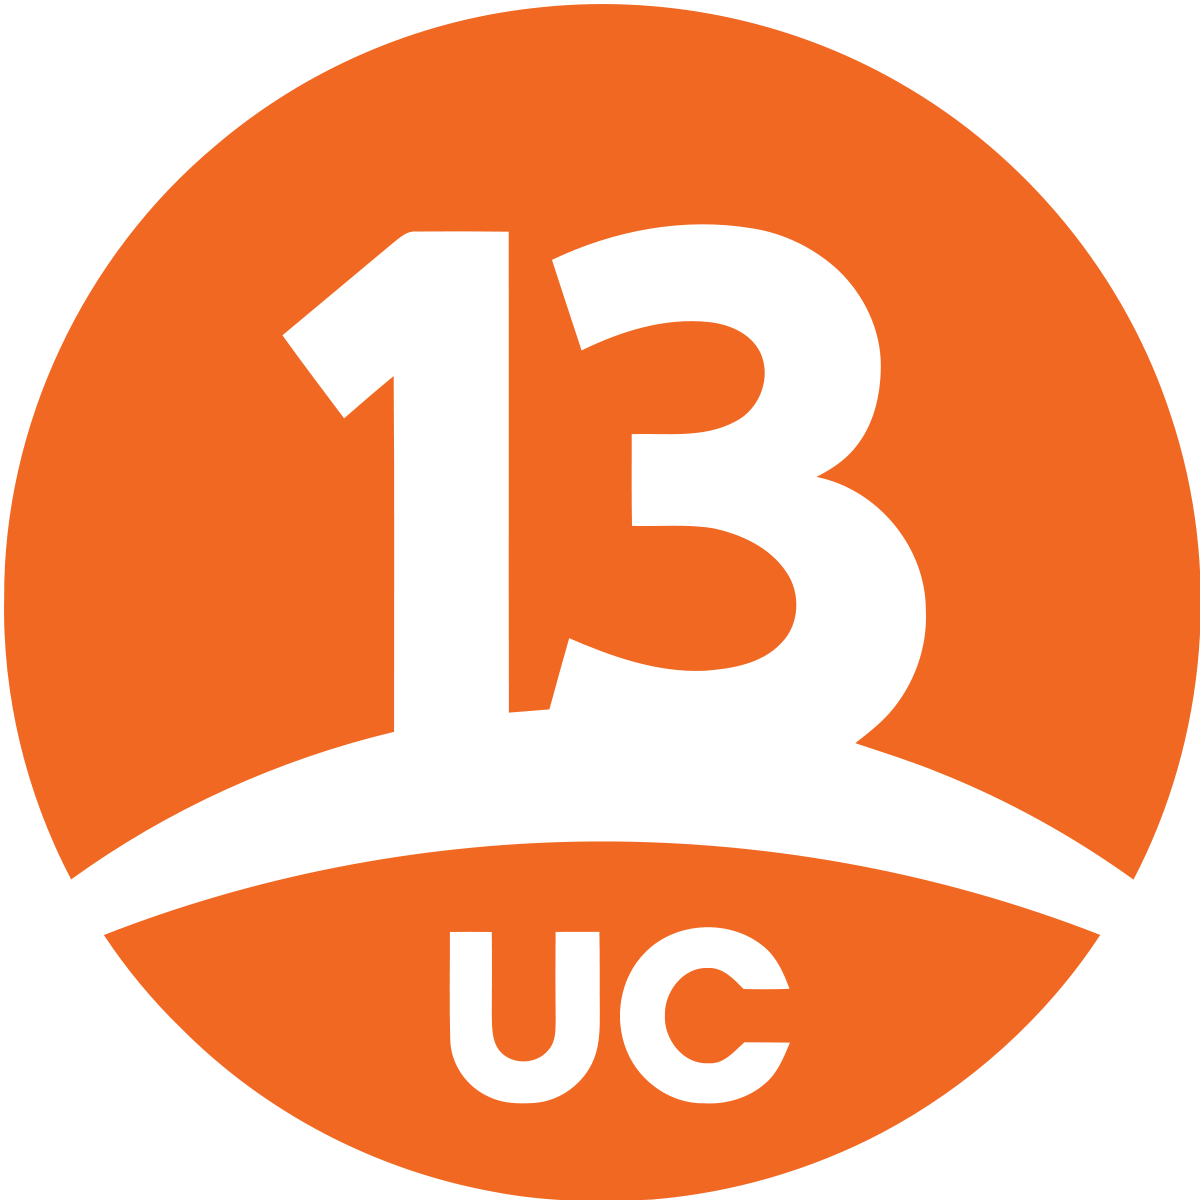 13 logo. 13 Логотип. Логотип с цифрой 13. 13 Канал. Канал с оранжевым логотипом.